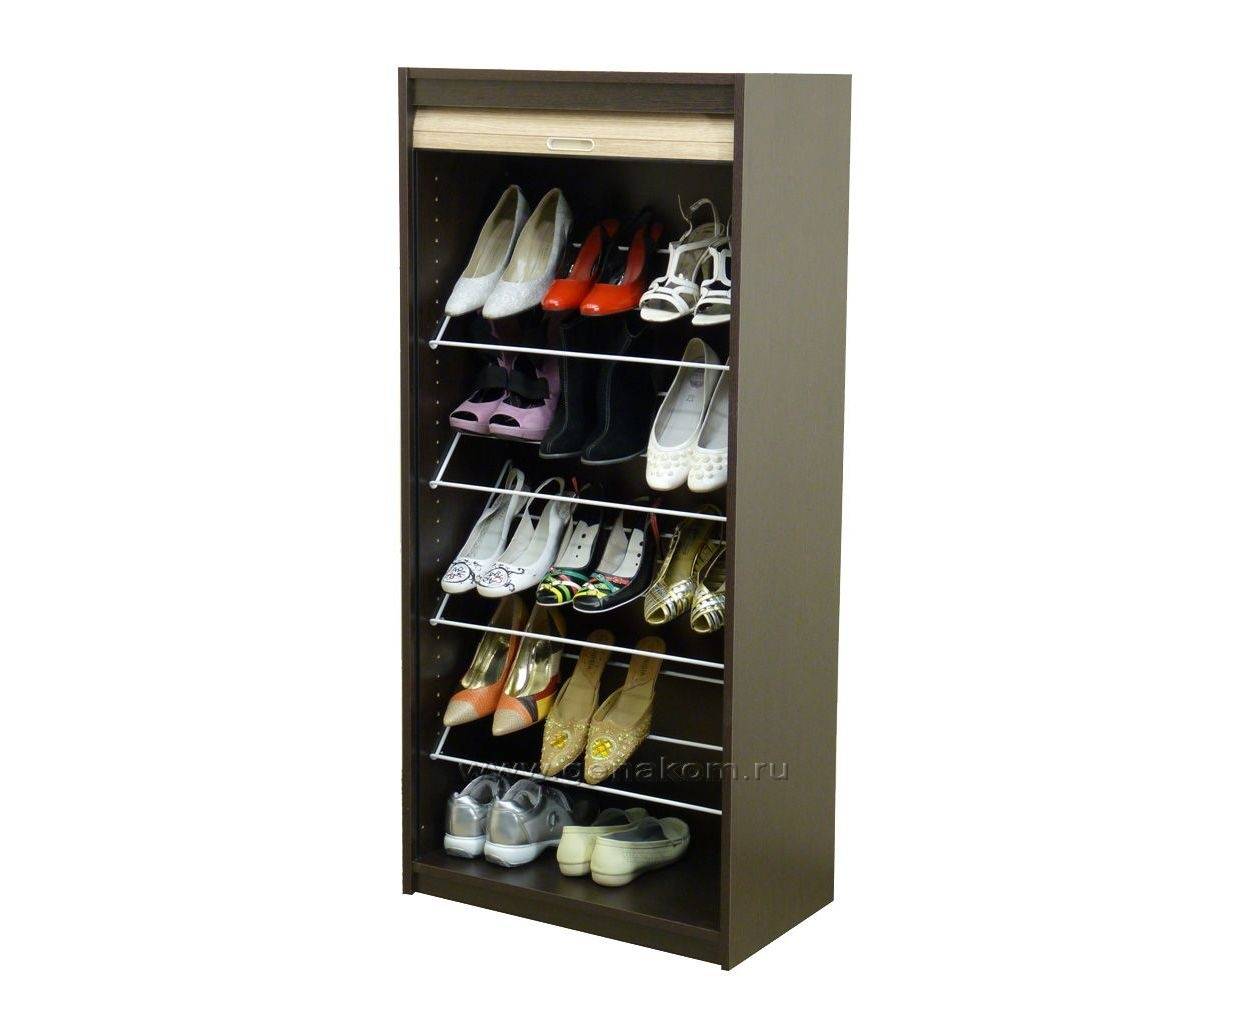 Шкаф для обуви — 140 фото современных вариантов и новинок дизайна. размер, цвет, материал, идеи для размещения в прихожей или коридоре